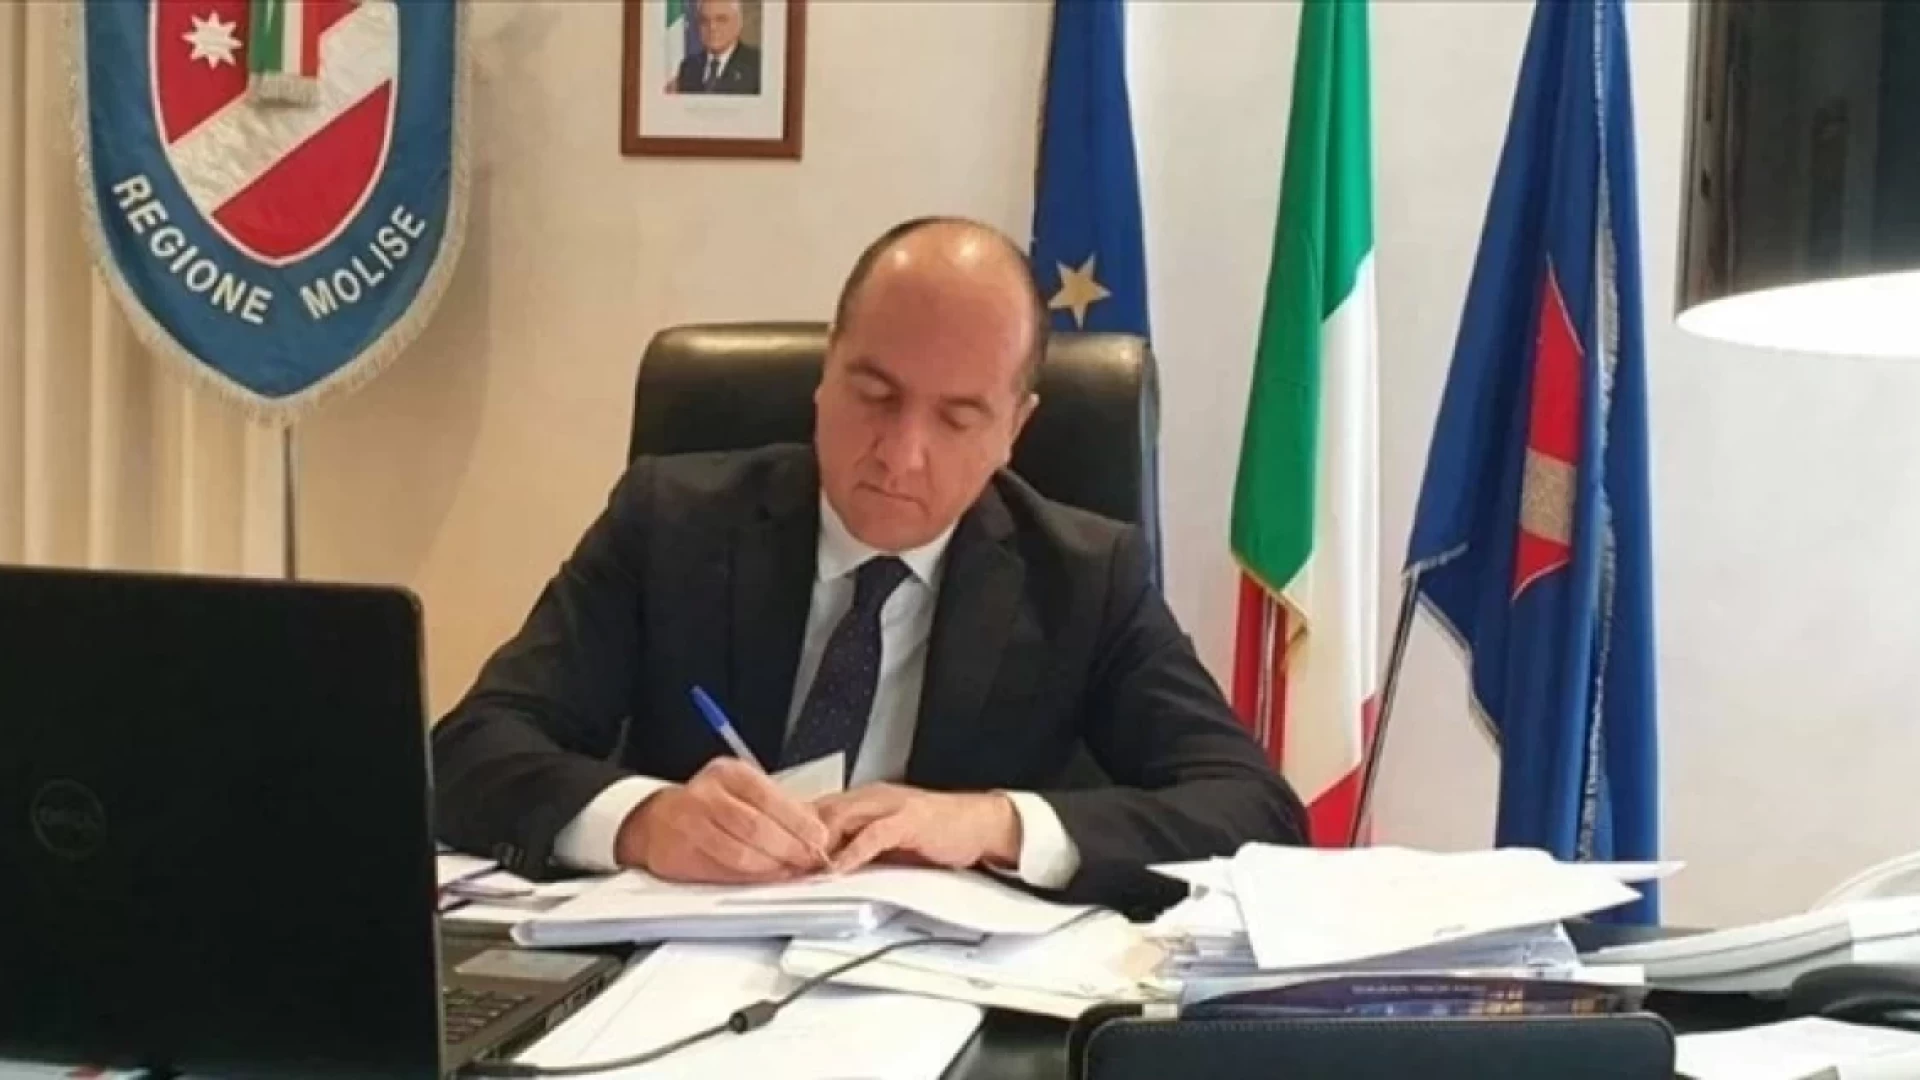 Ammodernamento dei frantoi oleari in Molise, approvato il nuovo bando pubblico. La nota dell'assessore regionale Micone.